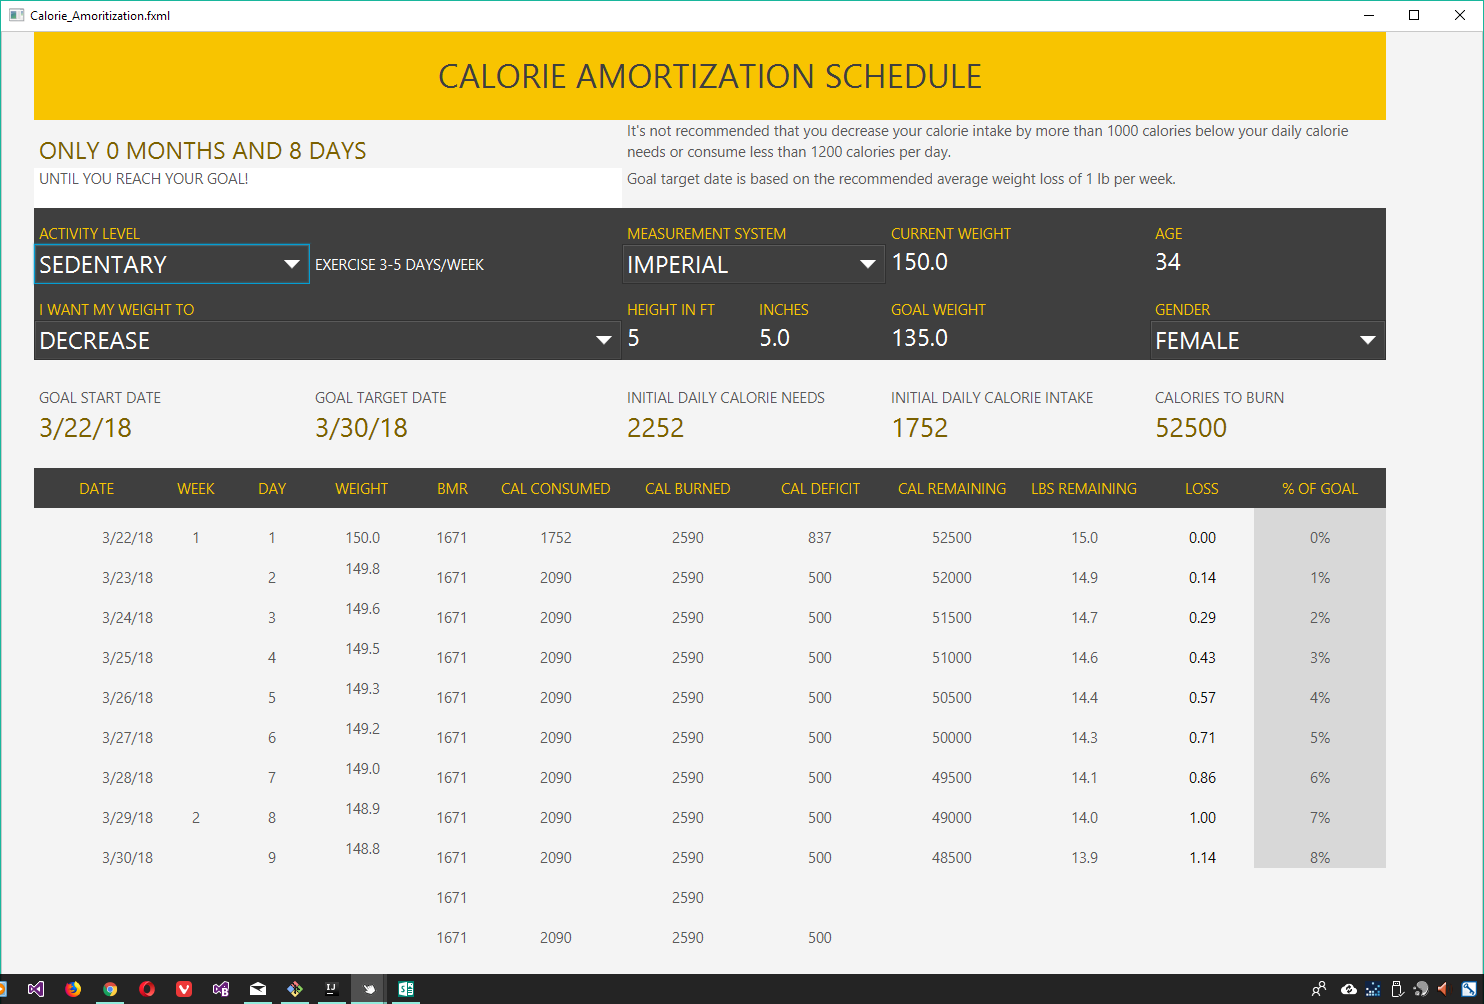 schedule1.xlsx - 'Calorie Amortization'